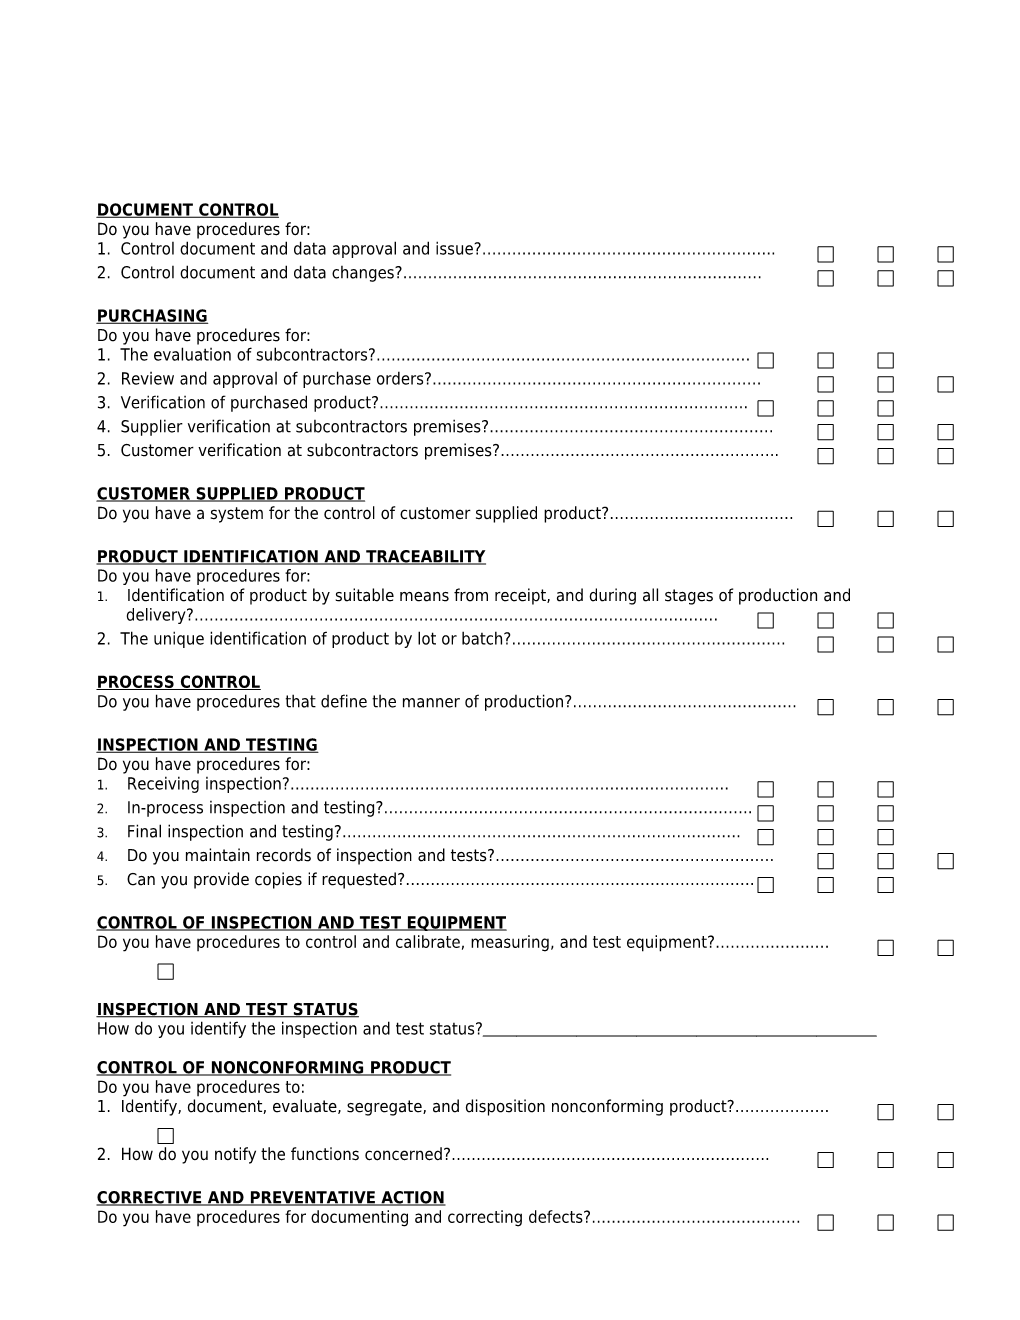 Rix Q024f(B) Vendor Survey Form